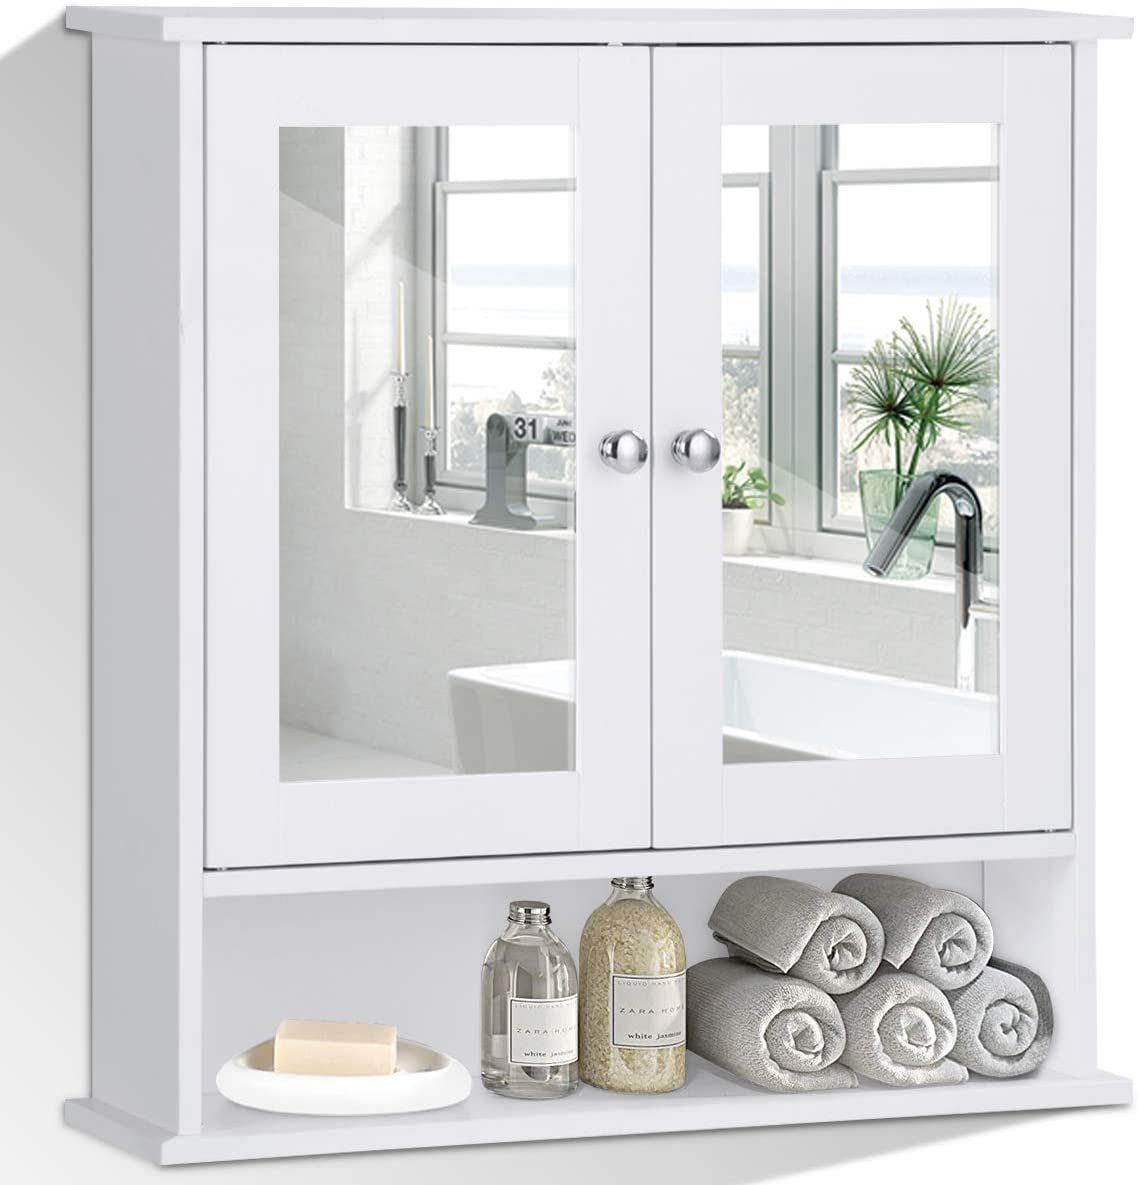 COSTWAY Spiegelschrank Badzimmerschrank mit höhenverstellbarer Ablage weiß